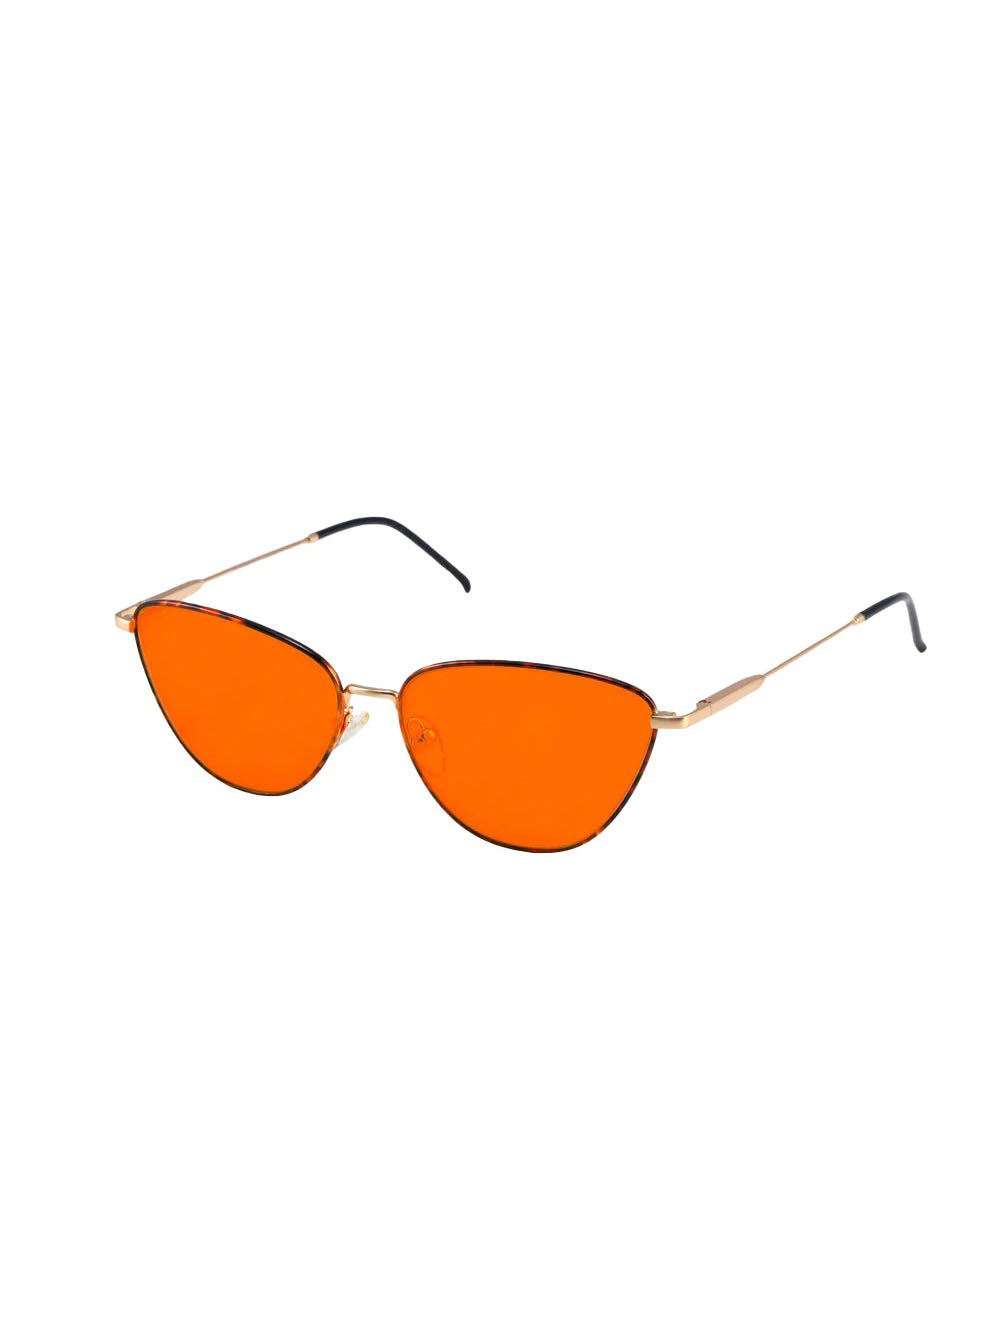 Raye Blue Light Blocking Glasses with orange lenses for home